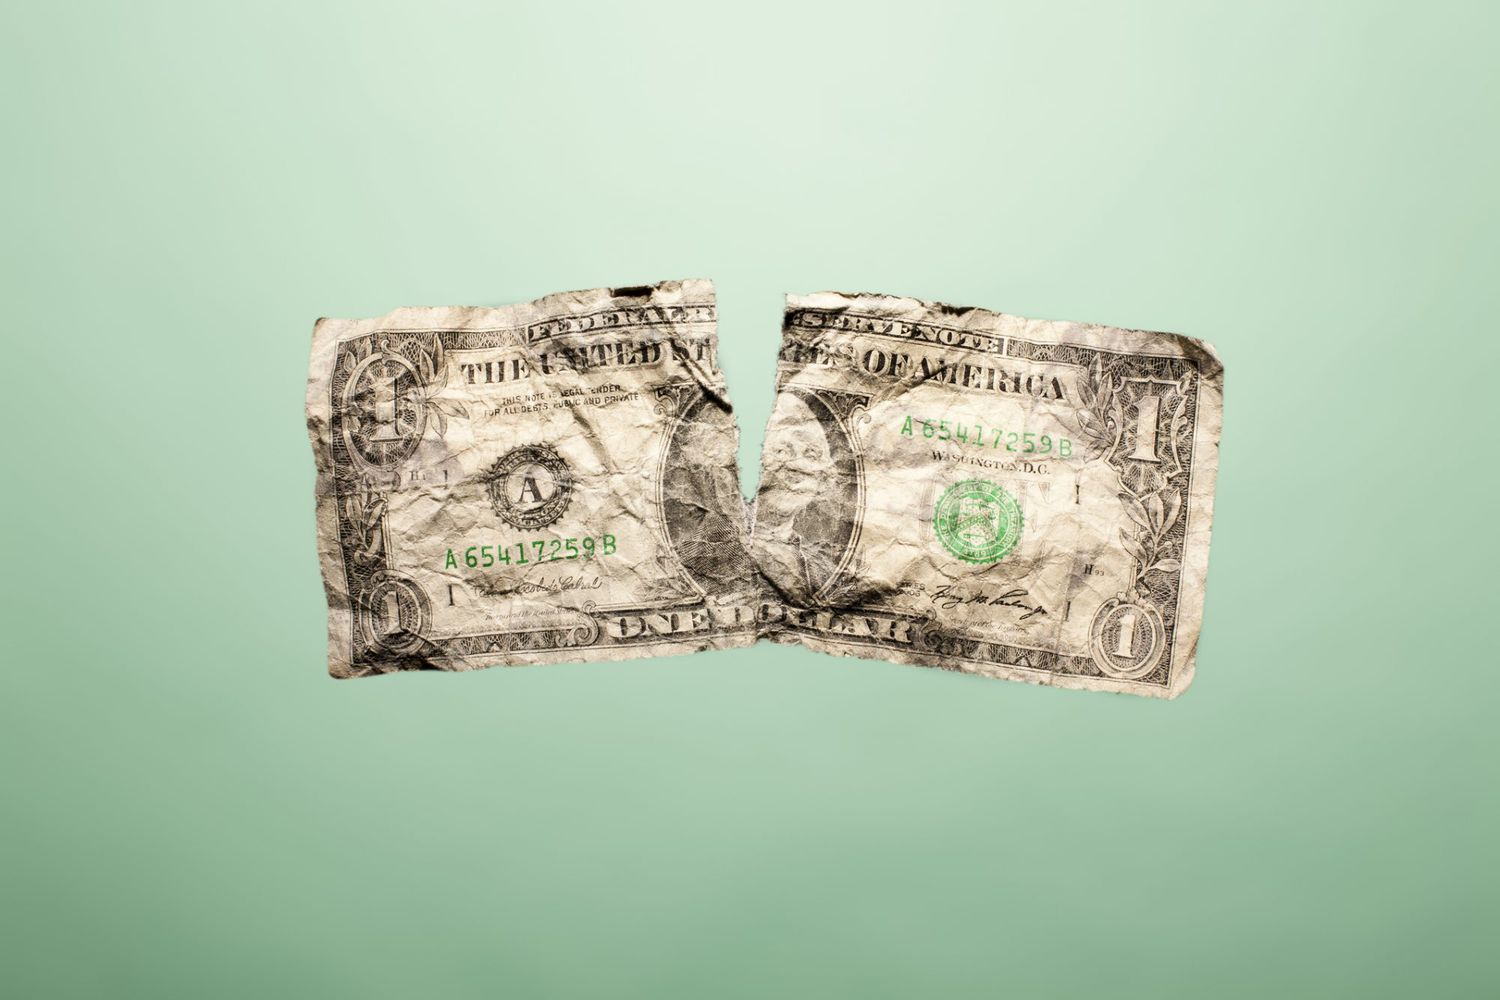 An image of a torn dollar bill.